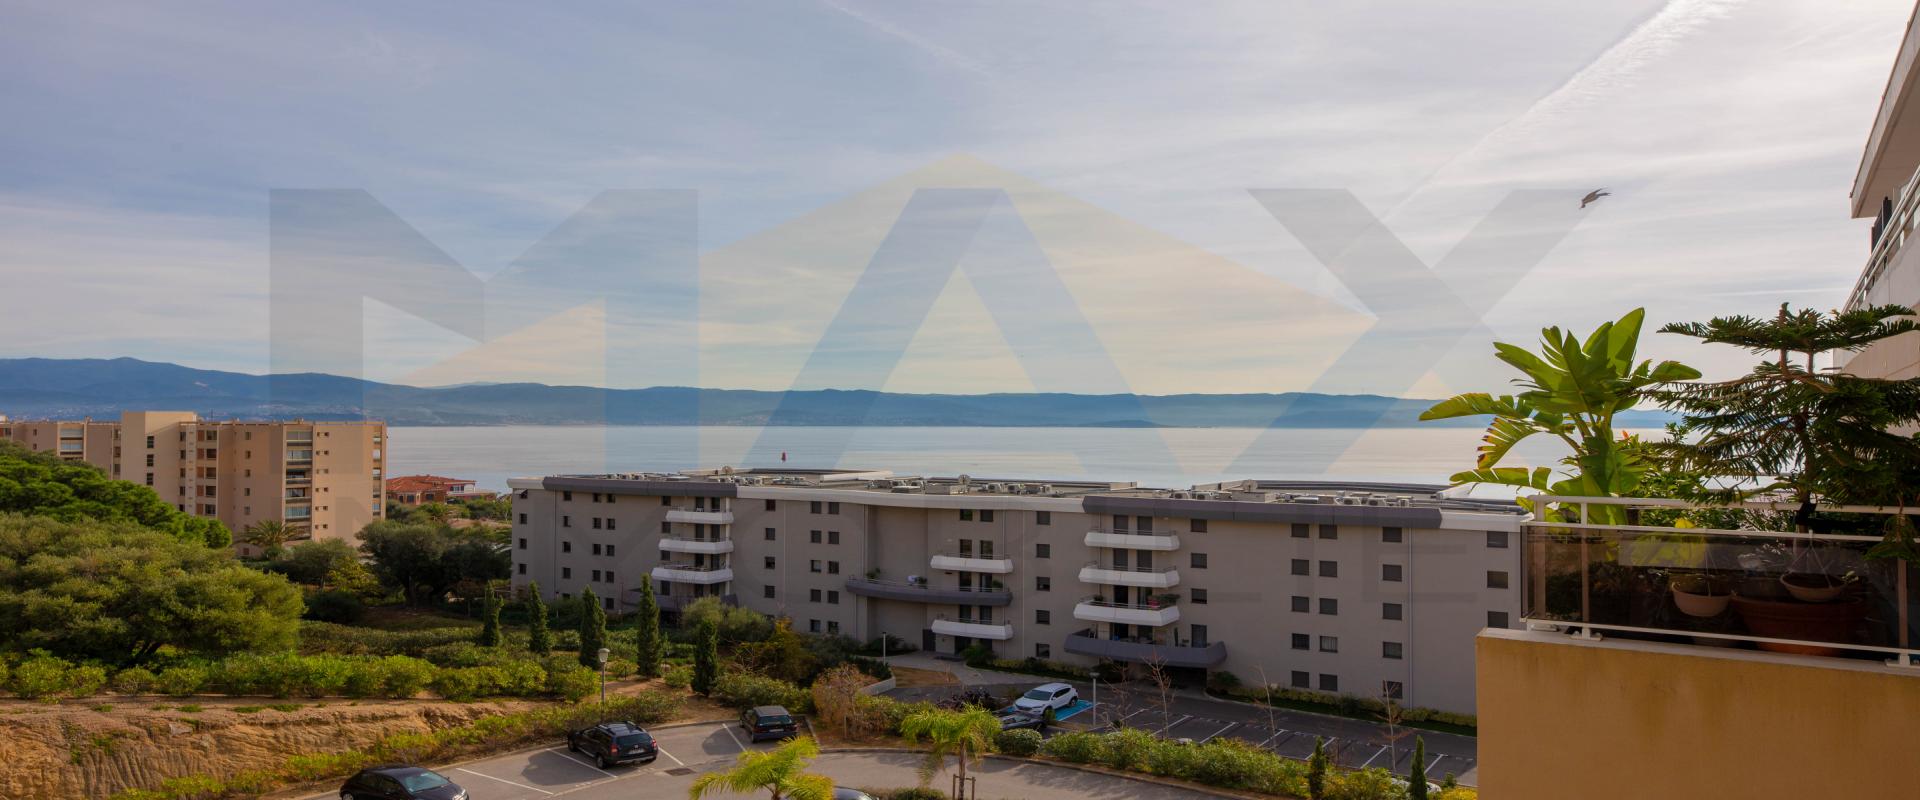 Idéal investisseur: 
En Corse, à Ajaccio, sur la route des Sanguinaires, Max Immobilier vous propose en exclusivité, un F2 loué d'une superficie d'environ 34m² avec une terrasse vue mer     